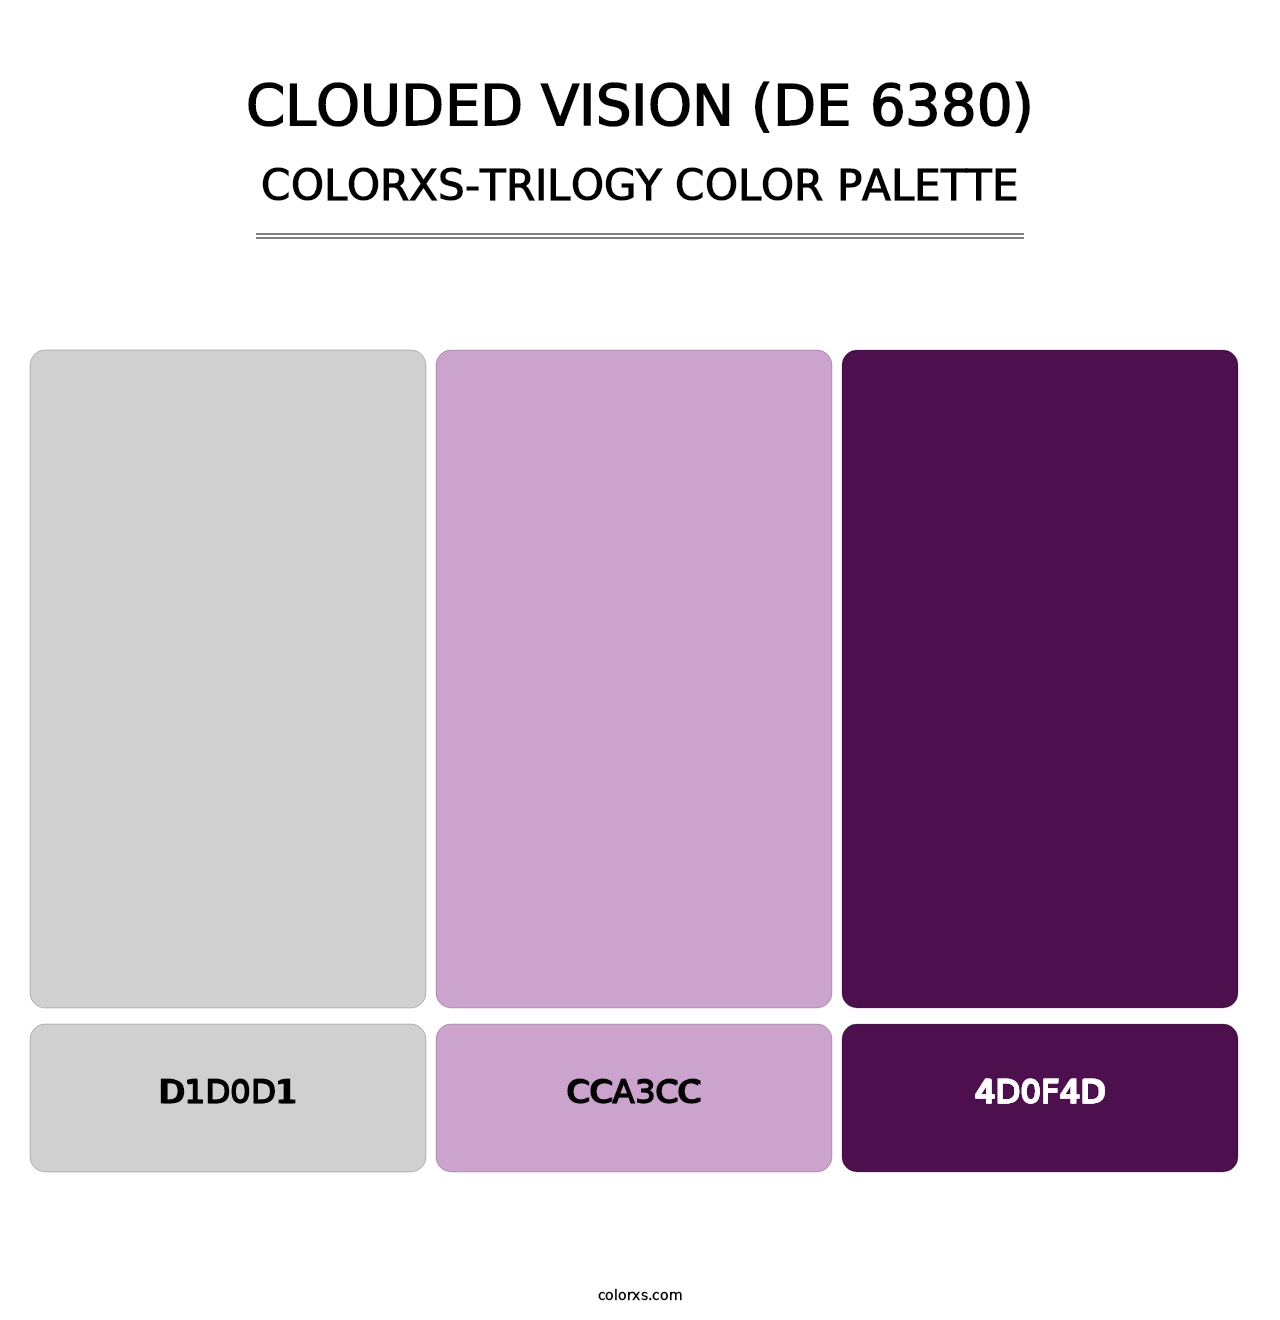 Clouded Vision (DE 6380) - Colorxs Trilogy Palette